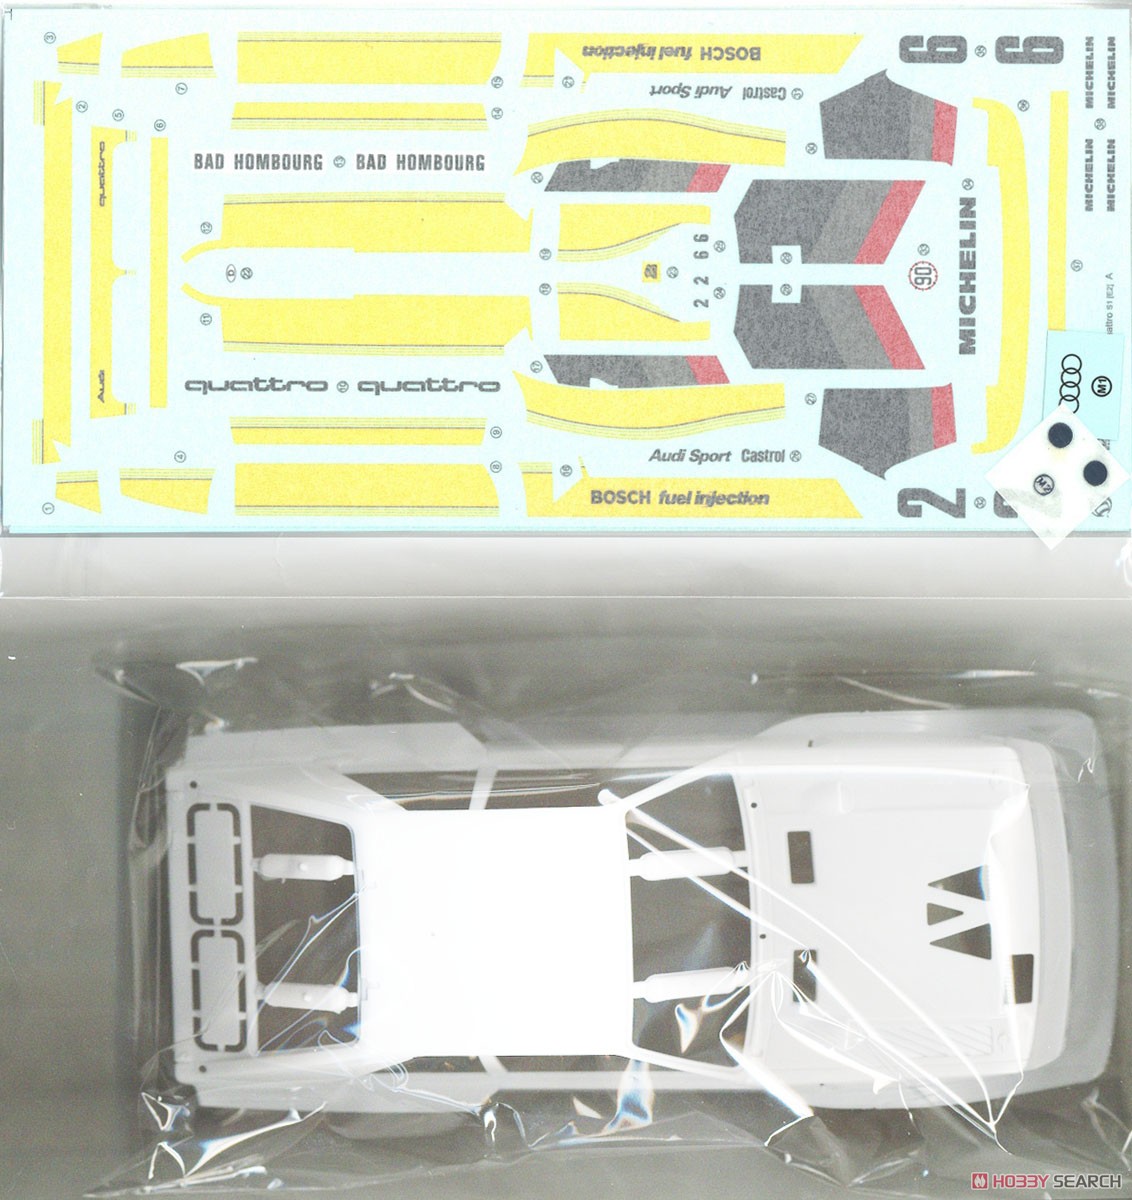 アウディ スポーツクワトロ S1 E2 `86 モンテカルロラリー仕様 (プラモデル) 中身3